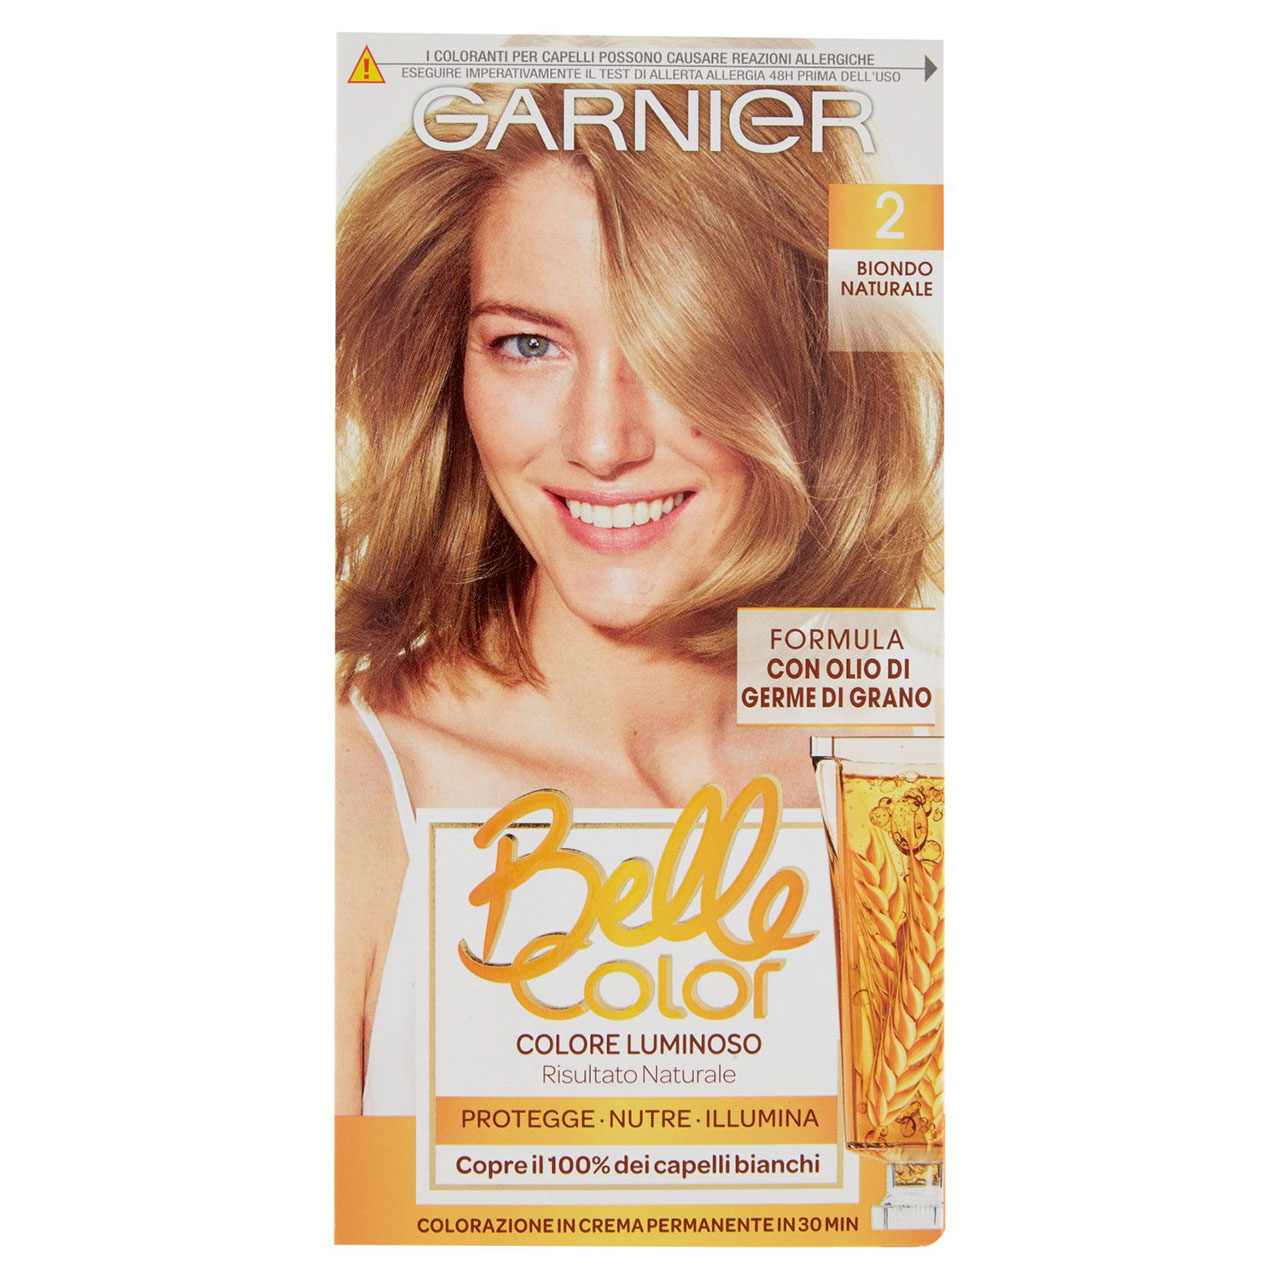 Garnier Belle Color Colore Luminoso 2 online